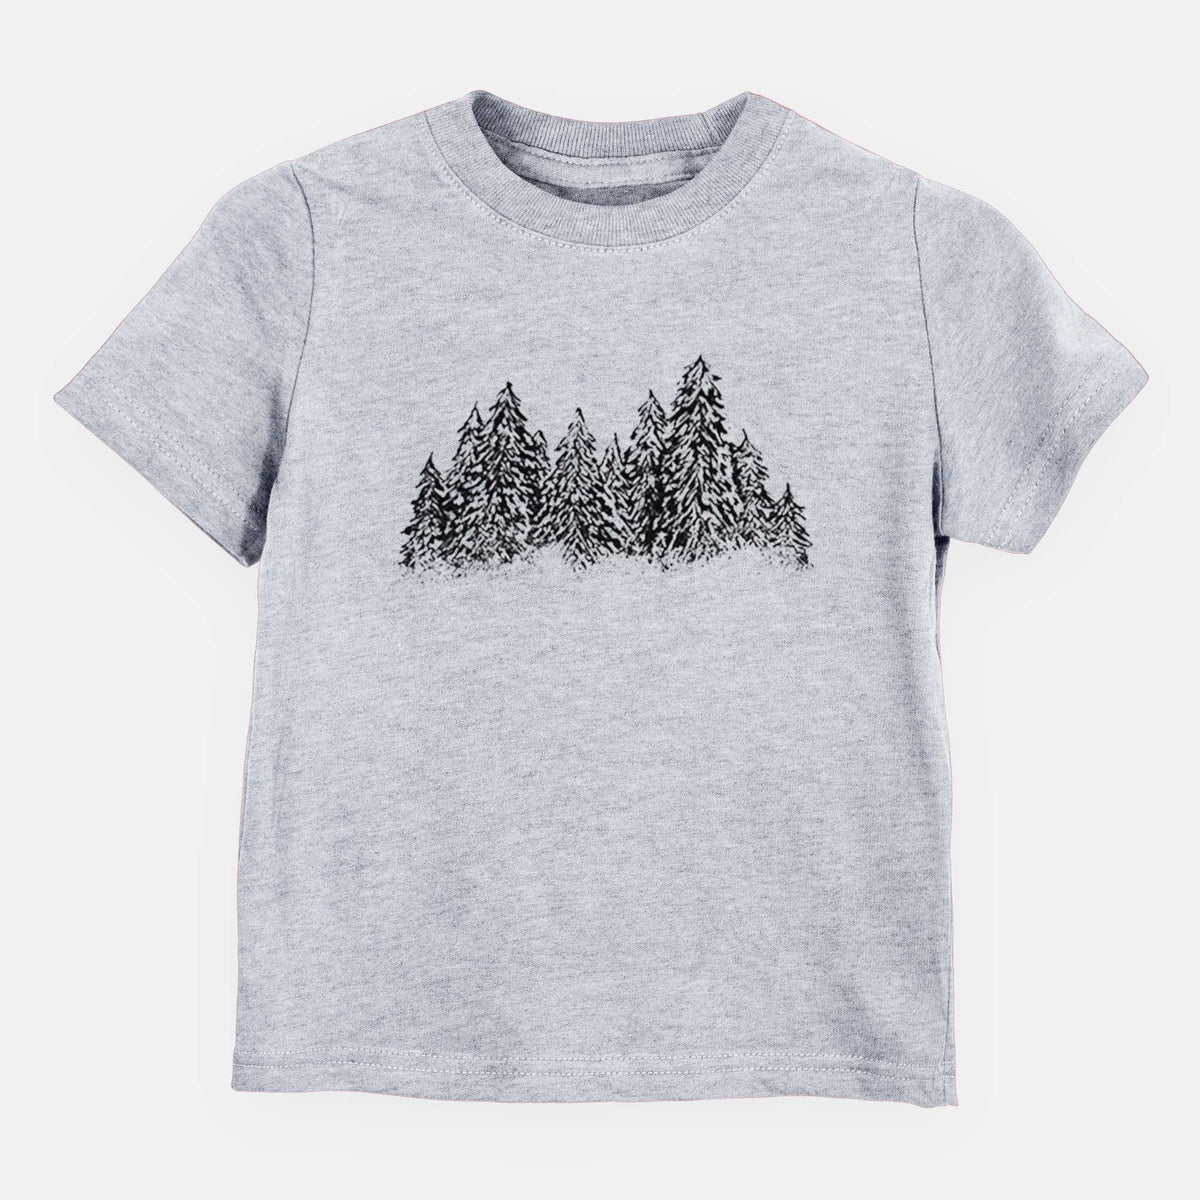 Winter Evergreens - Kids Shirt